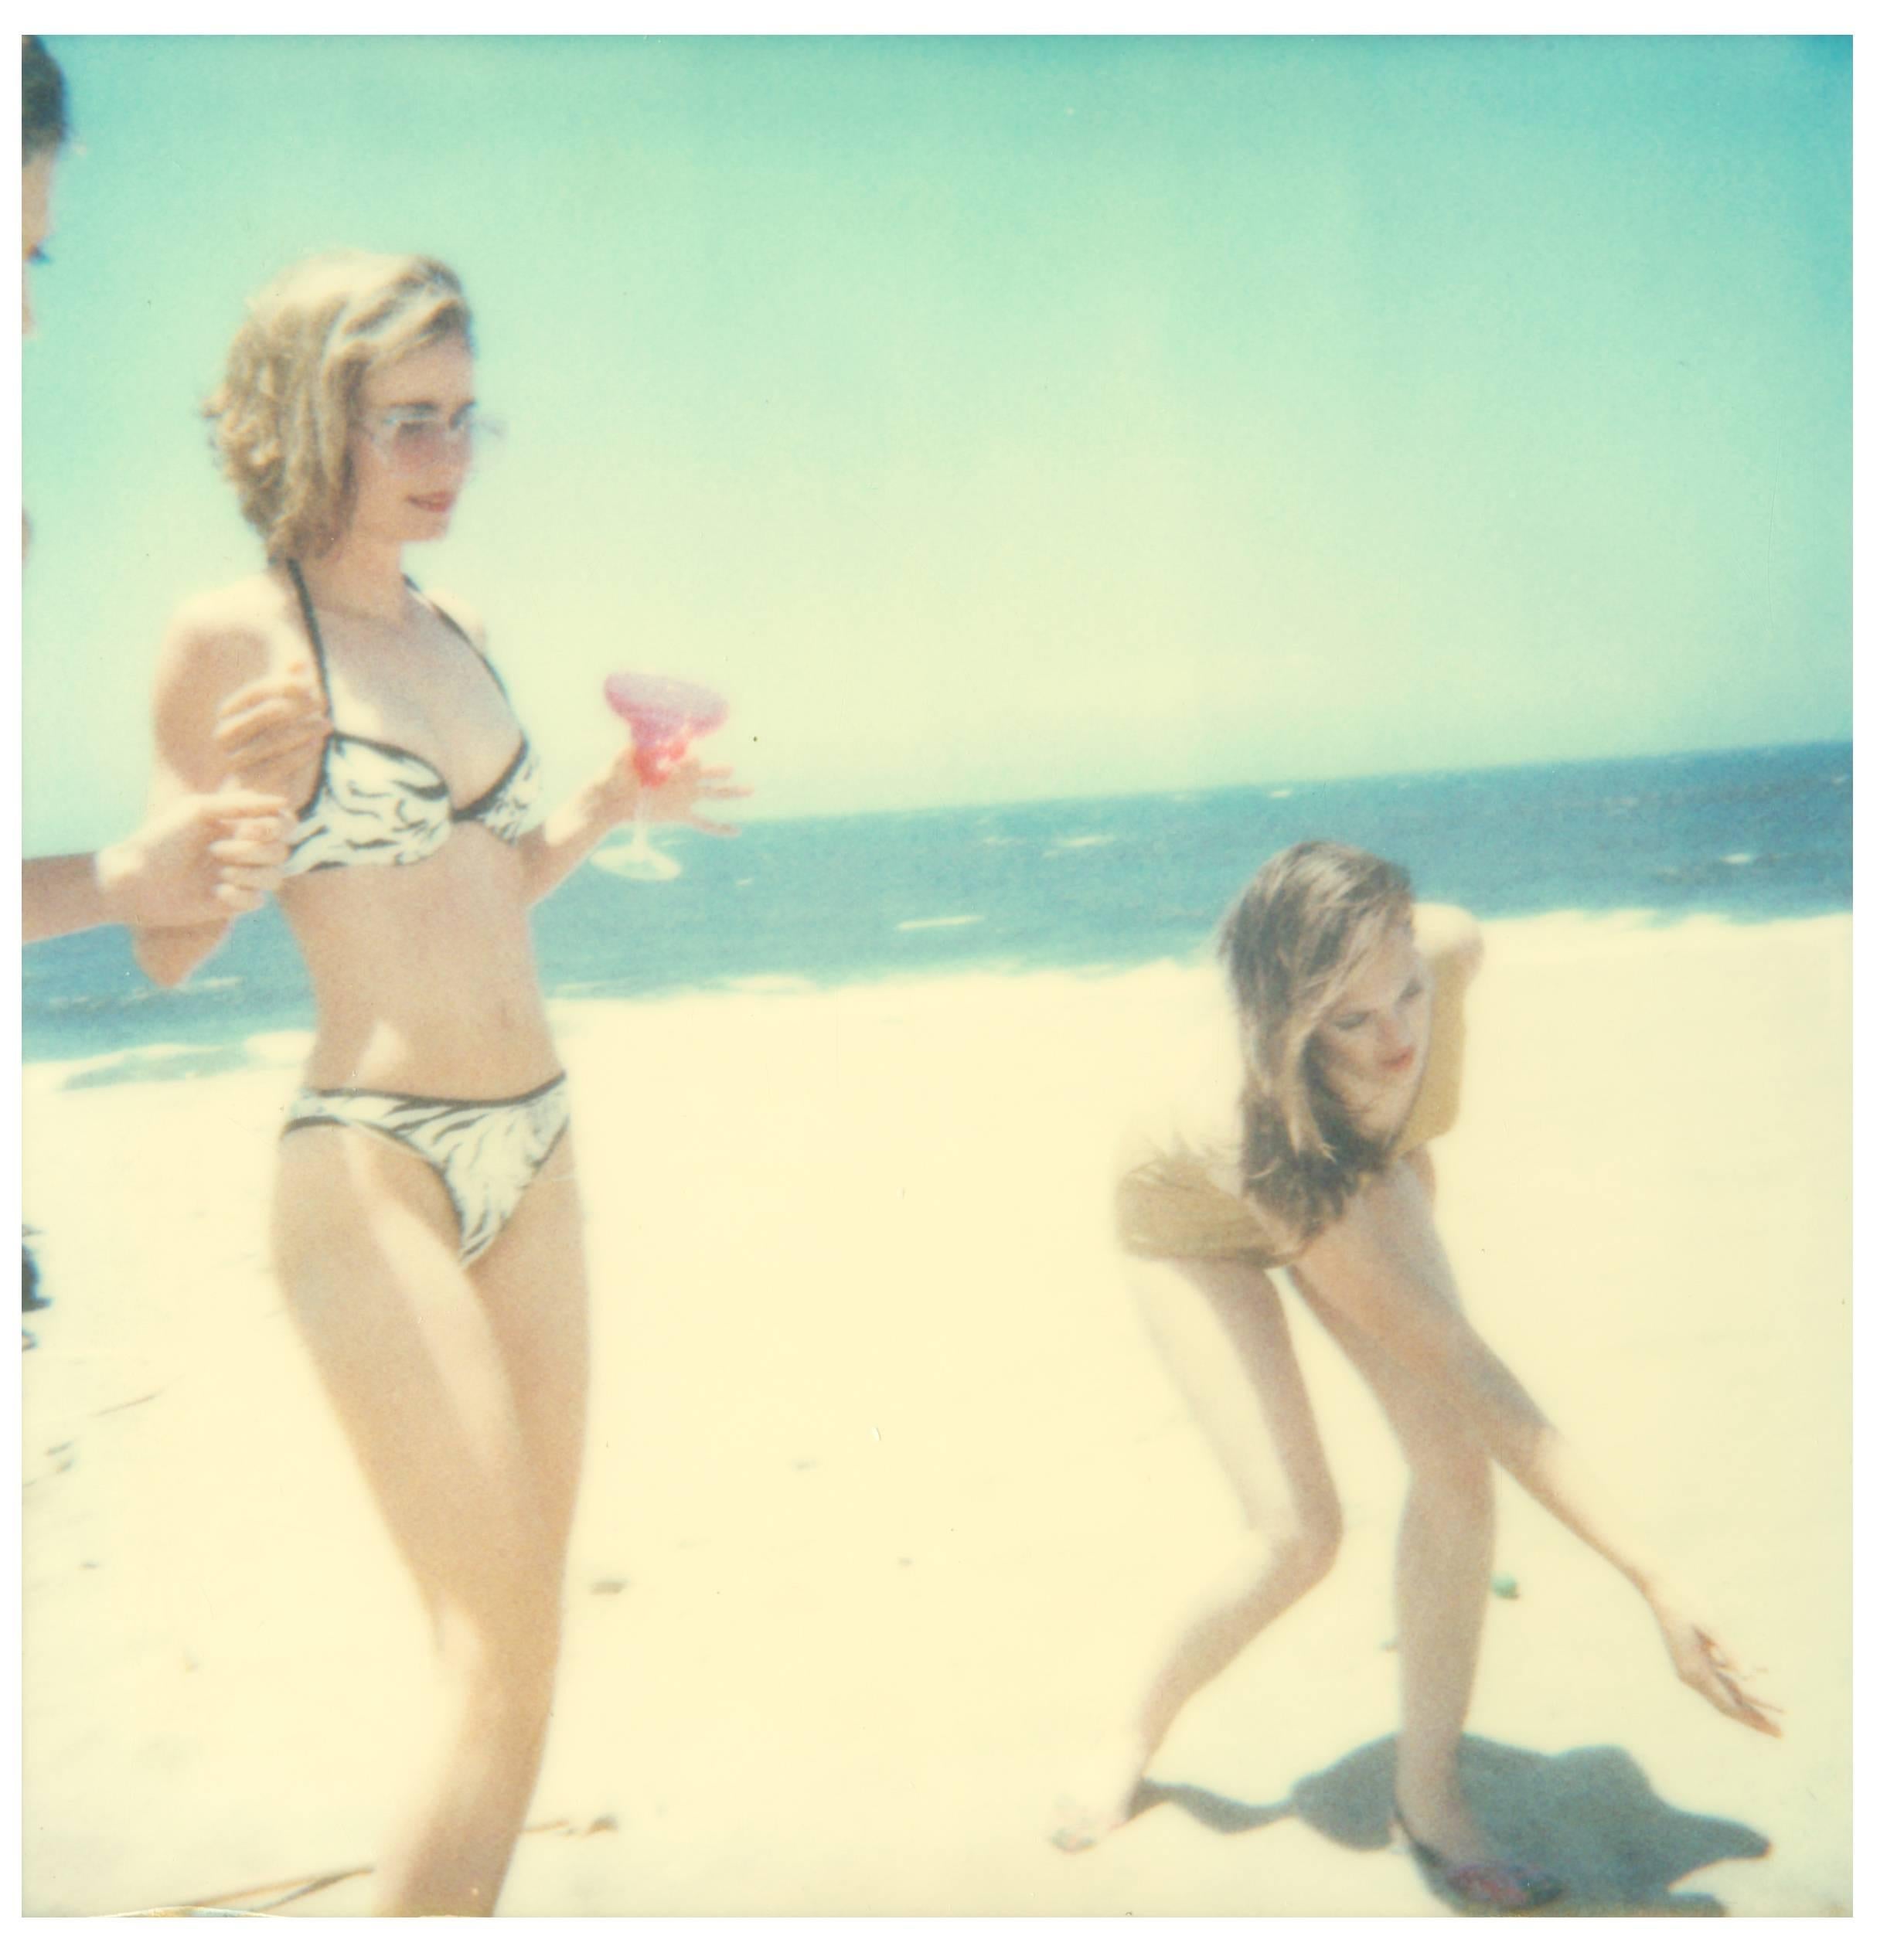 Stefanie Schneider Color Photograph - Untitled - Beachshoot with Radha Mitchell